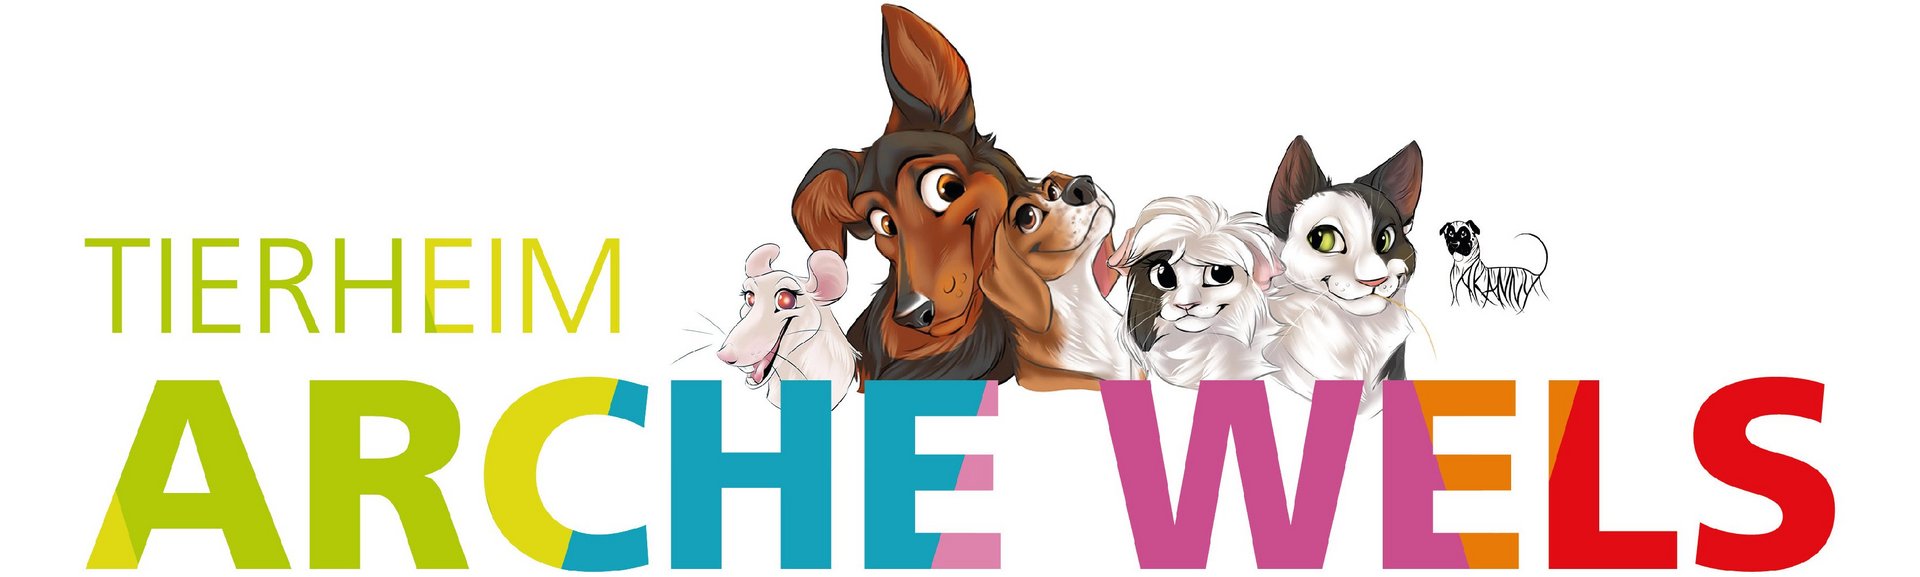 Tierheim Arche Wels - Logo mit Cartoon-Darstellungen von Tieren